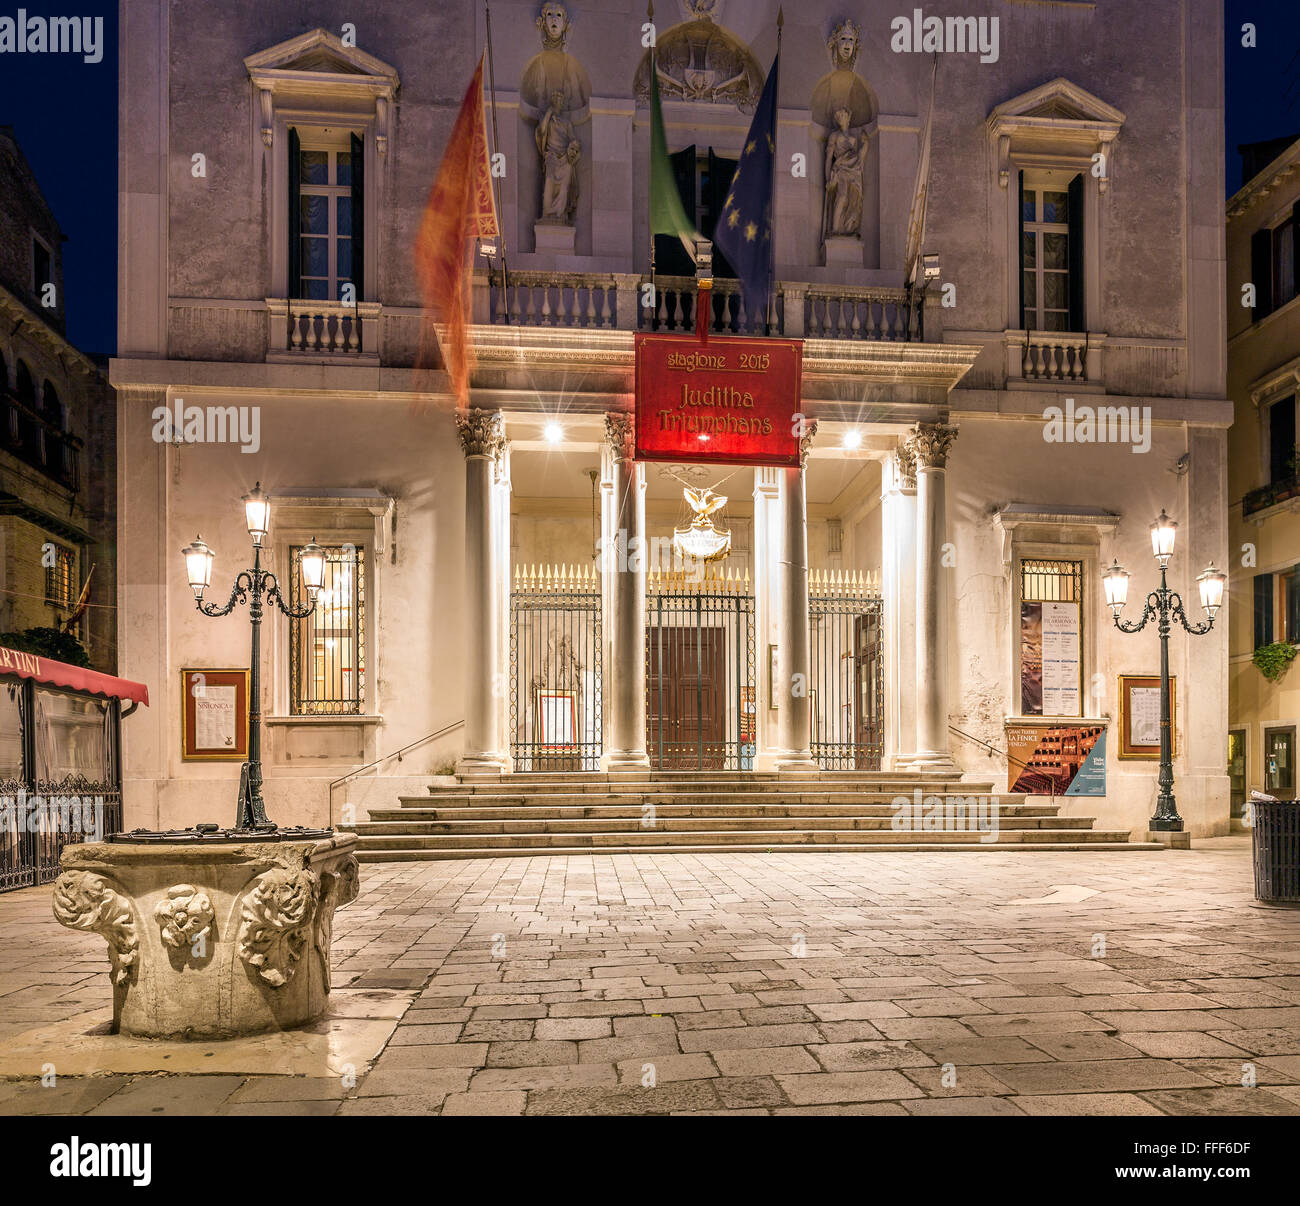 VENICE, ITALY - MAY 29, 2015: Illuminated La Fenice theater at night in Venice, Italy Stock Photo